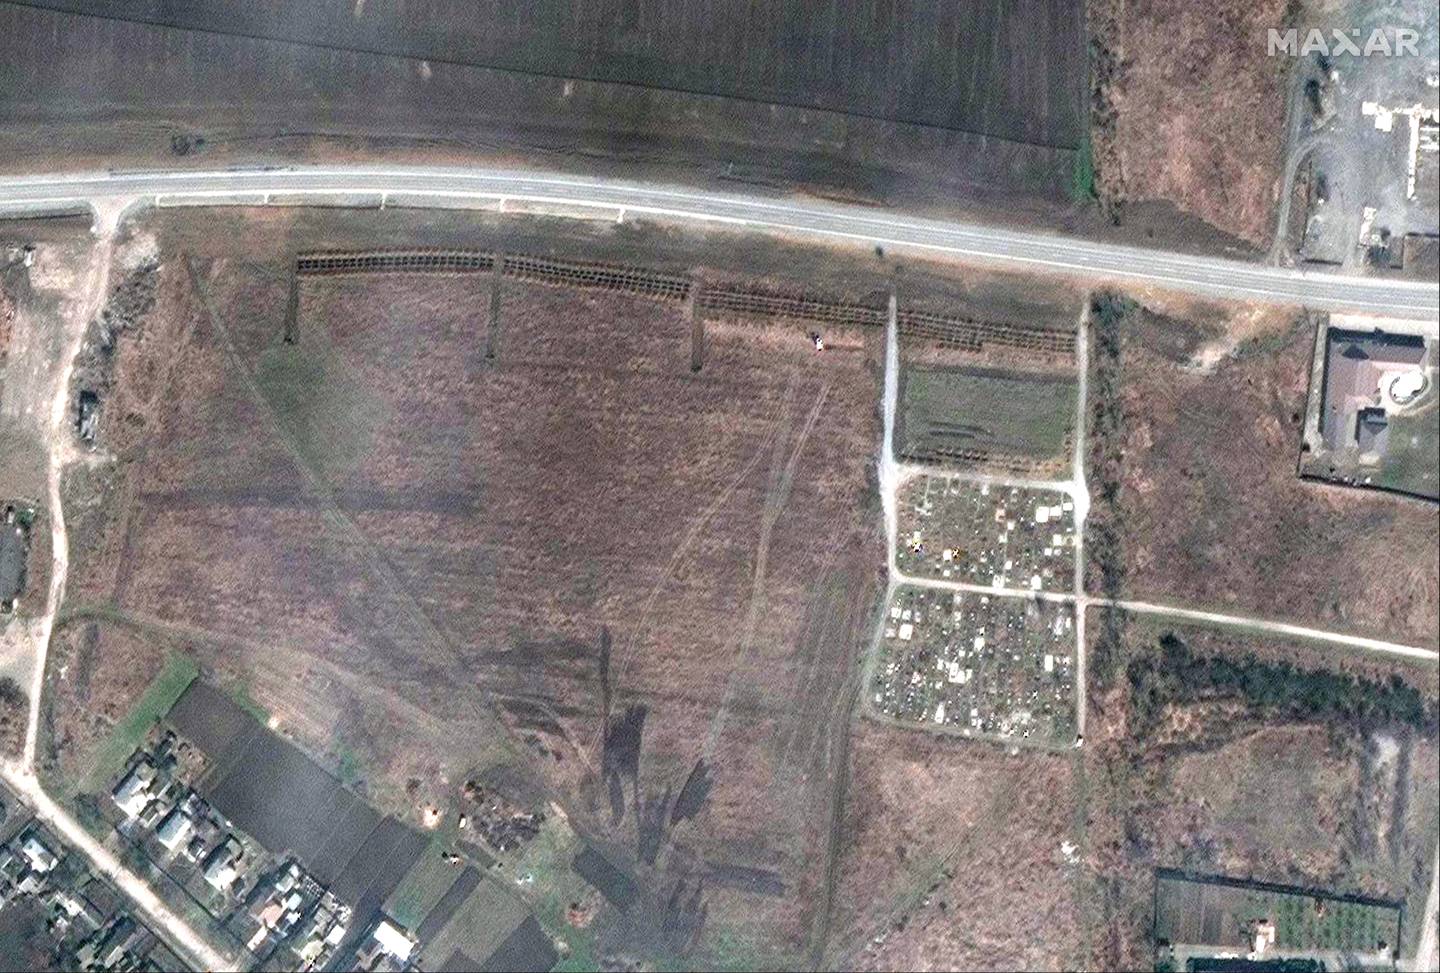 Dette satellittbildet er tatt torsdag 21. april og viser en rekke nye graver på et jorde utenfor landsbyen Manhusj utenfor Mariupol. Foto: Maxar Technologies / AP / NTB